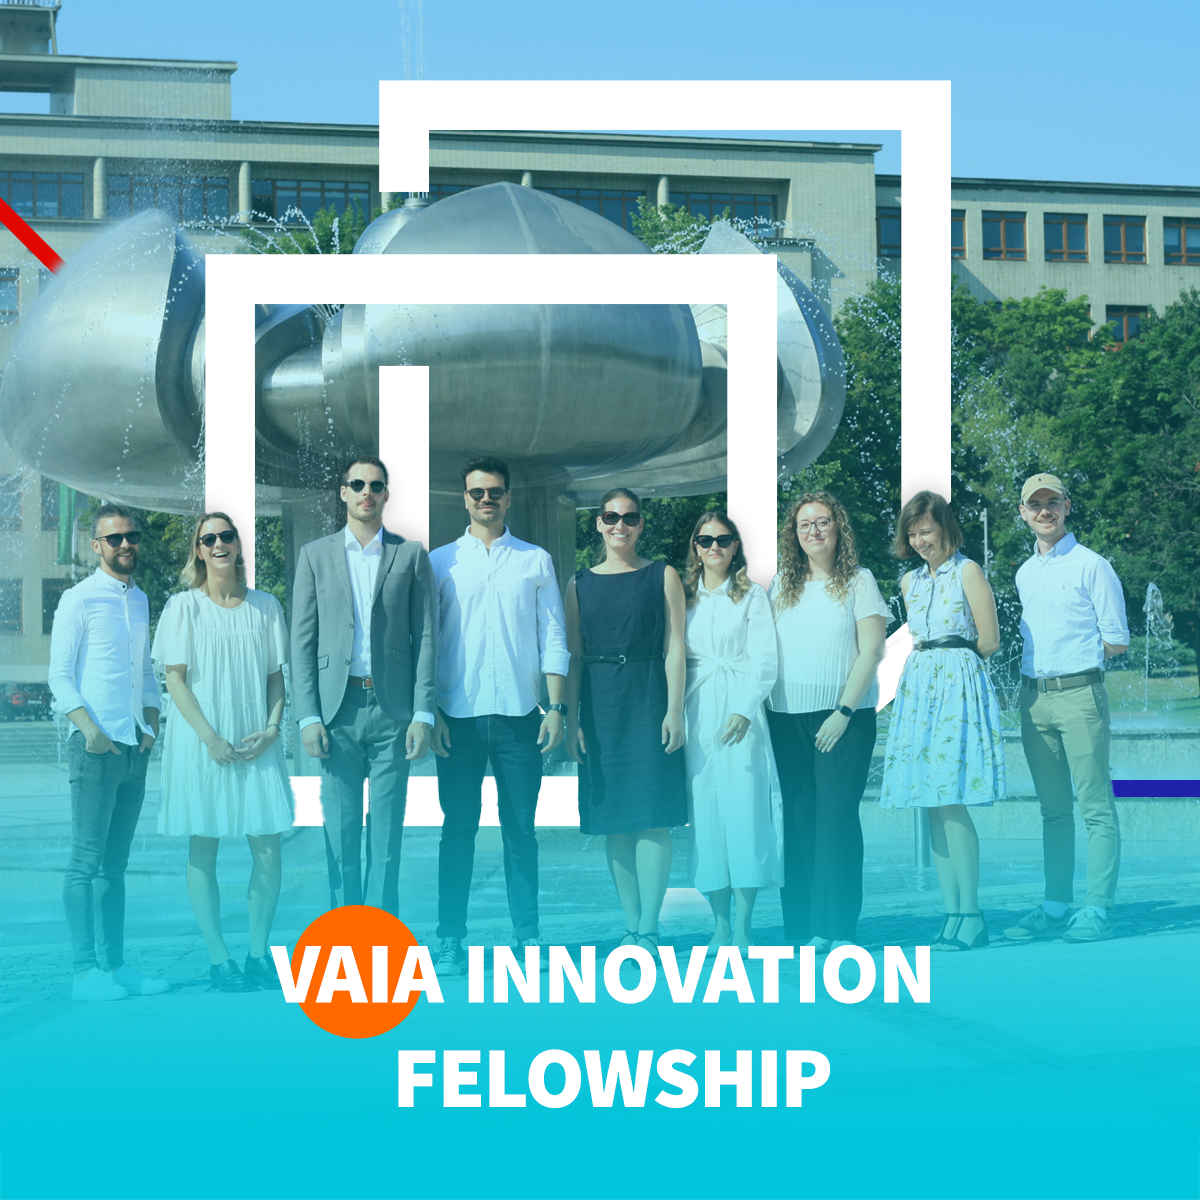 O programe VAIA Innovation Fellowship